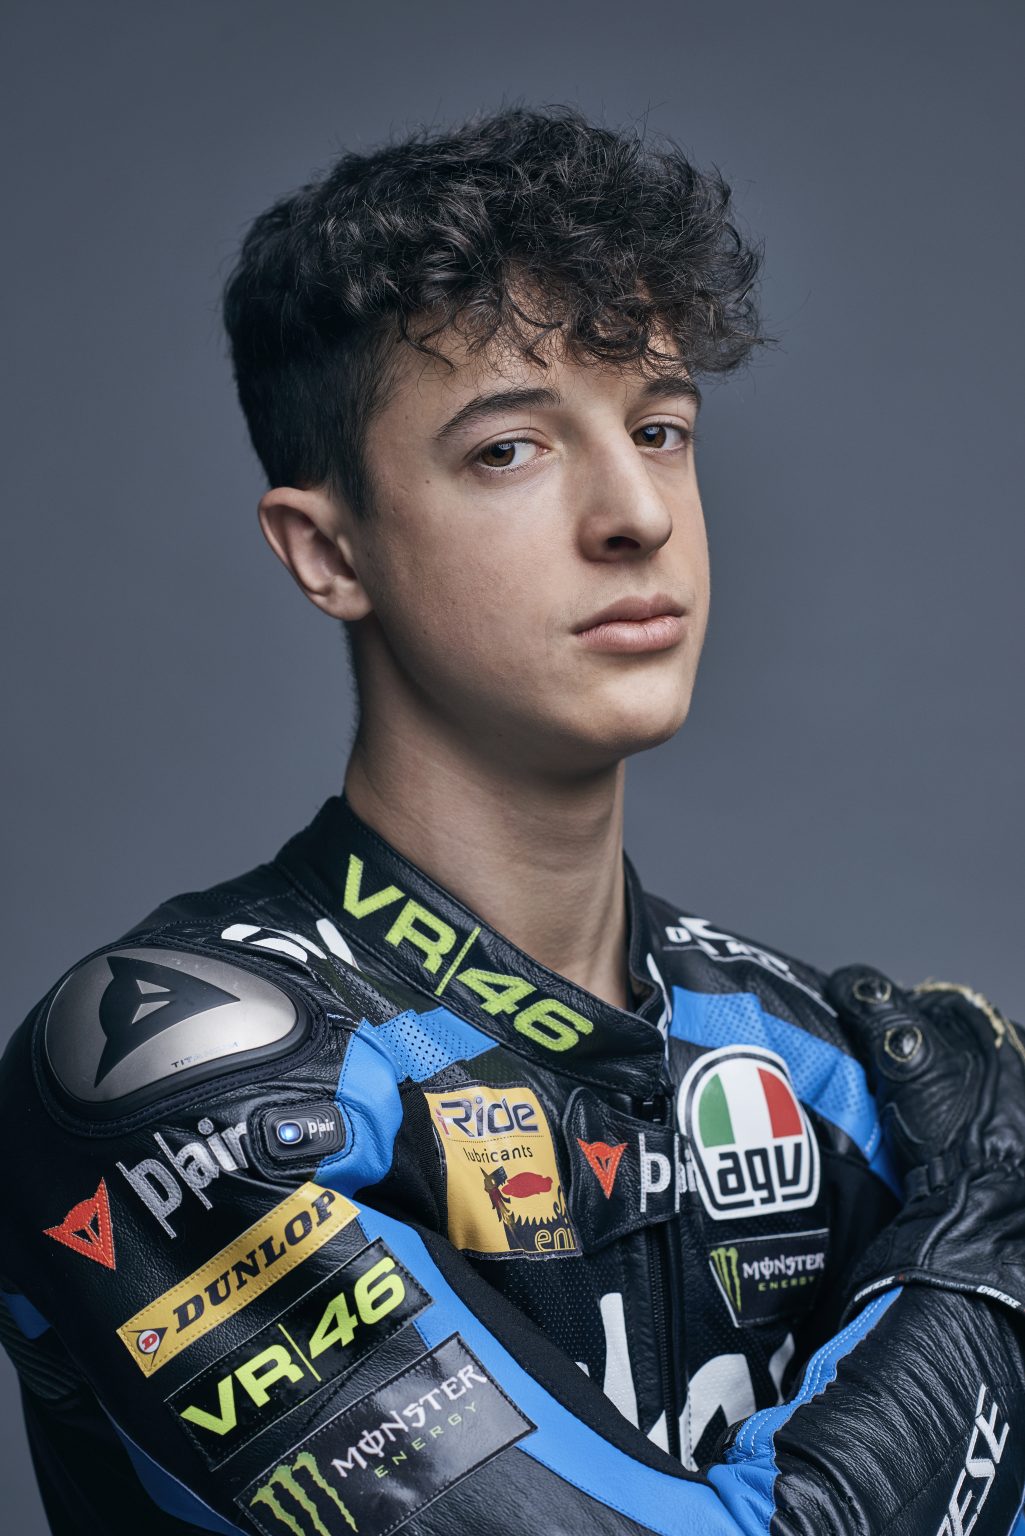 Milan, January 2019 - Celestino Vietti, Sky Racing Team VR46 motobiker. ><
Milano, gennaio 2019 - Celestino Vietti, pilota della squadra di motociclismo Sky Racing Team VR46.